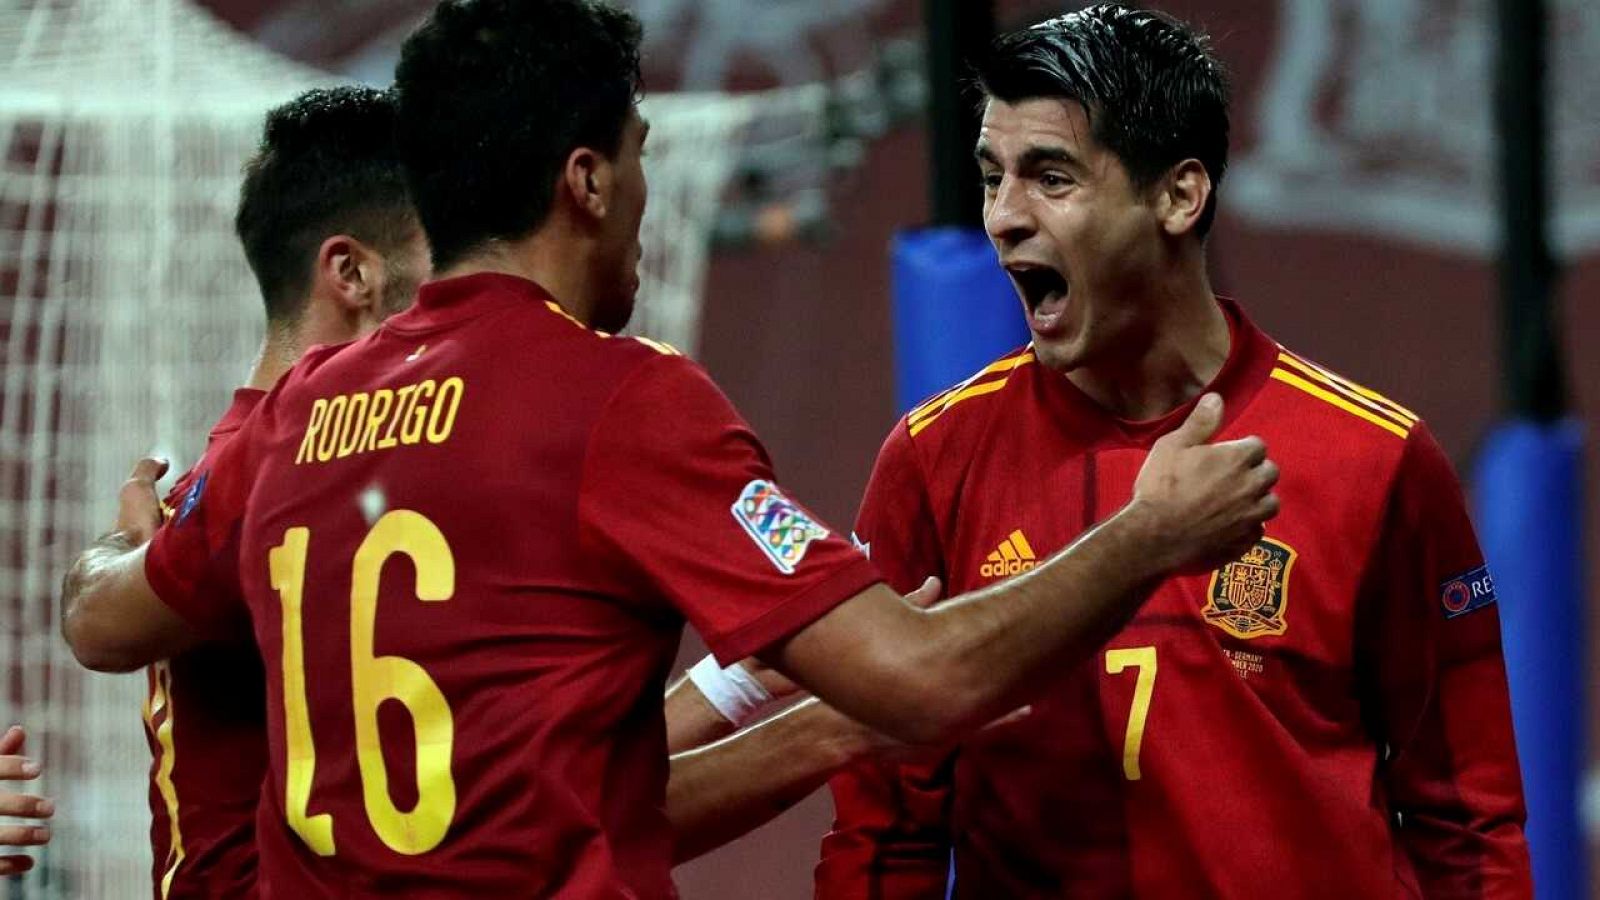 España-Alemania | Morata adelanta a España (1-0)